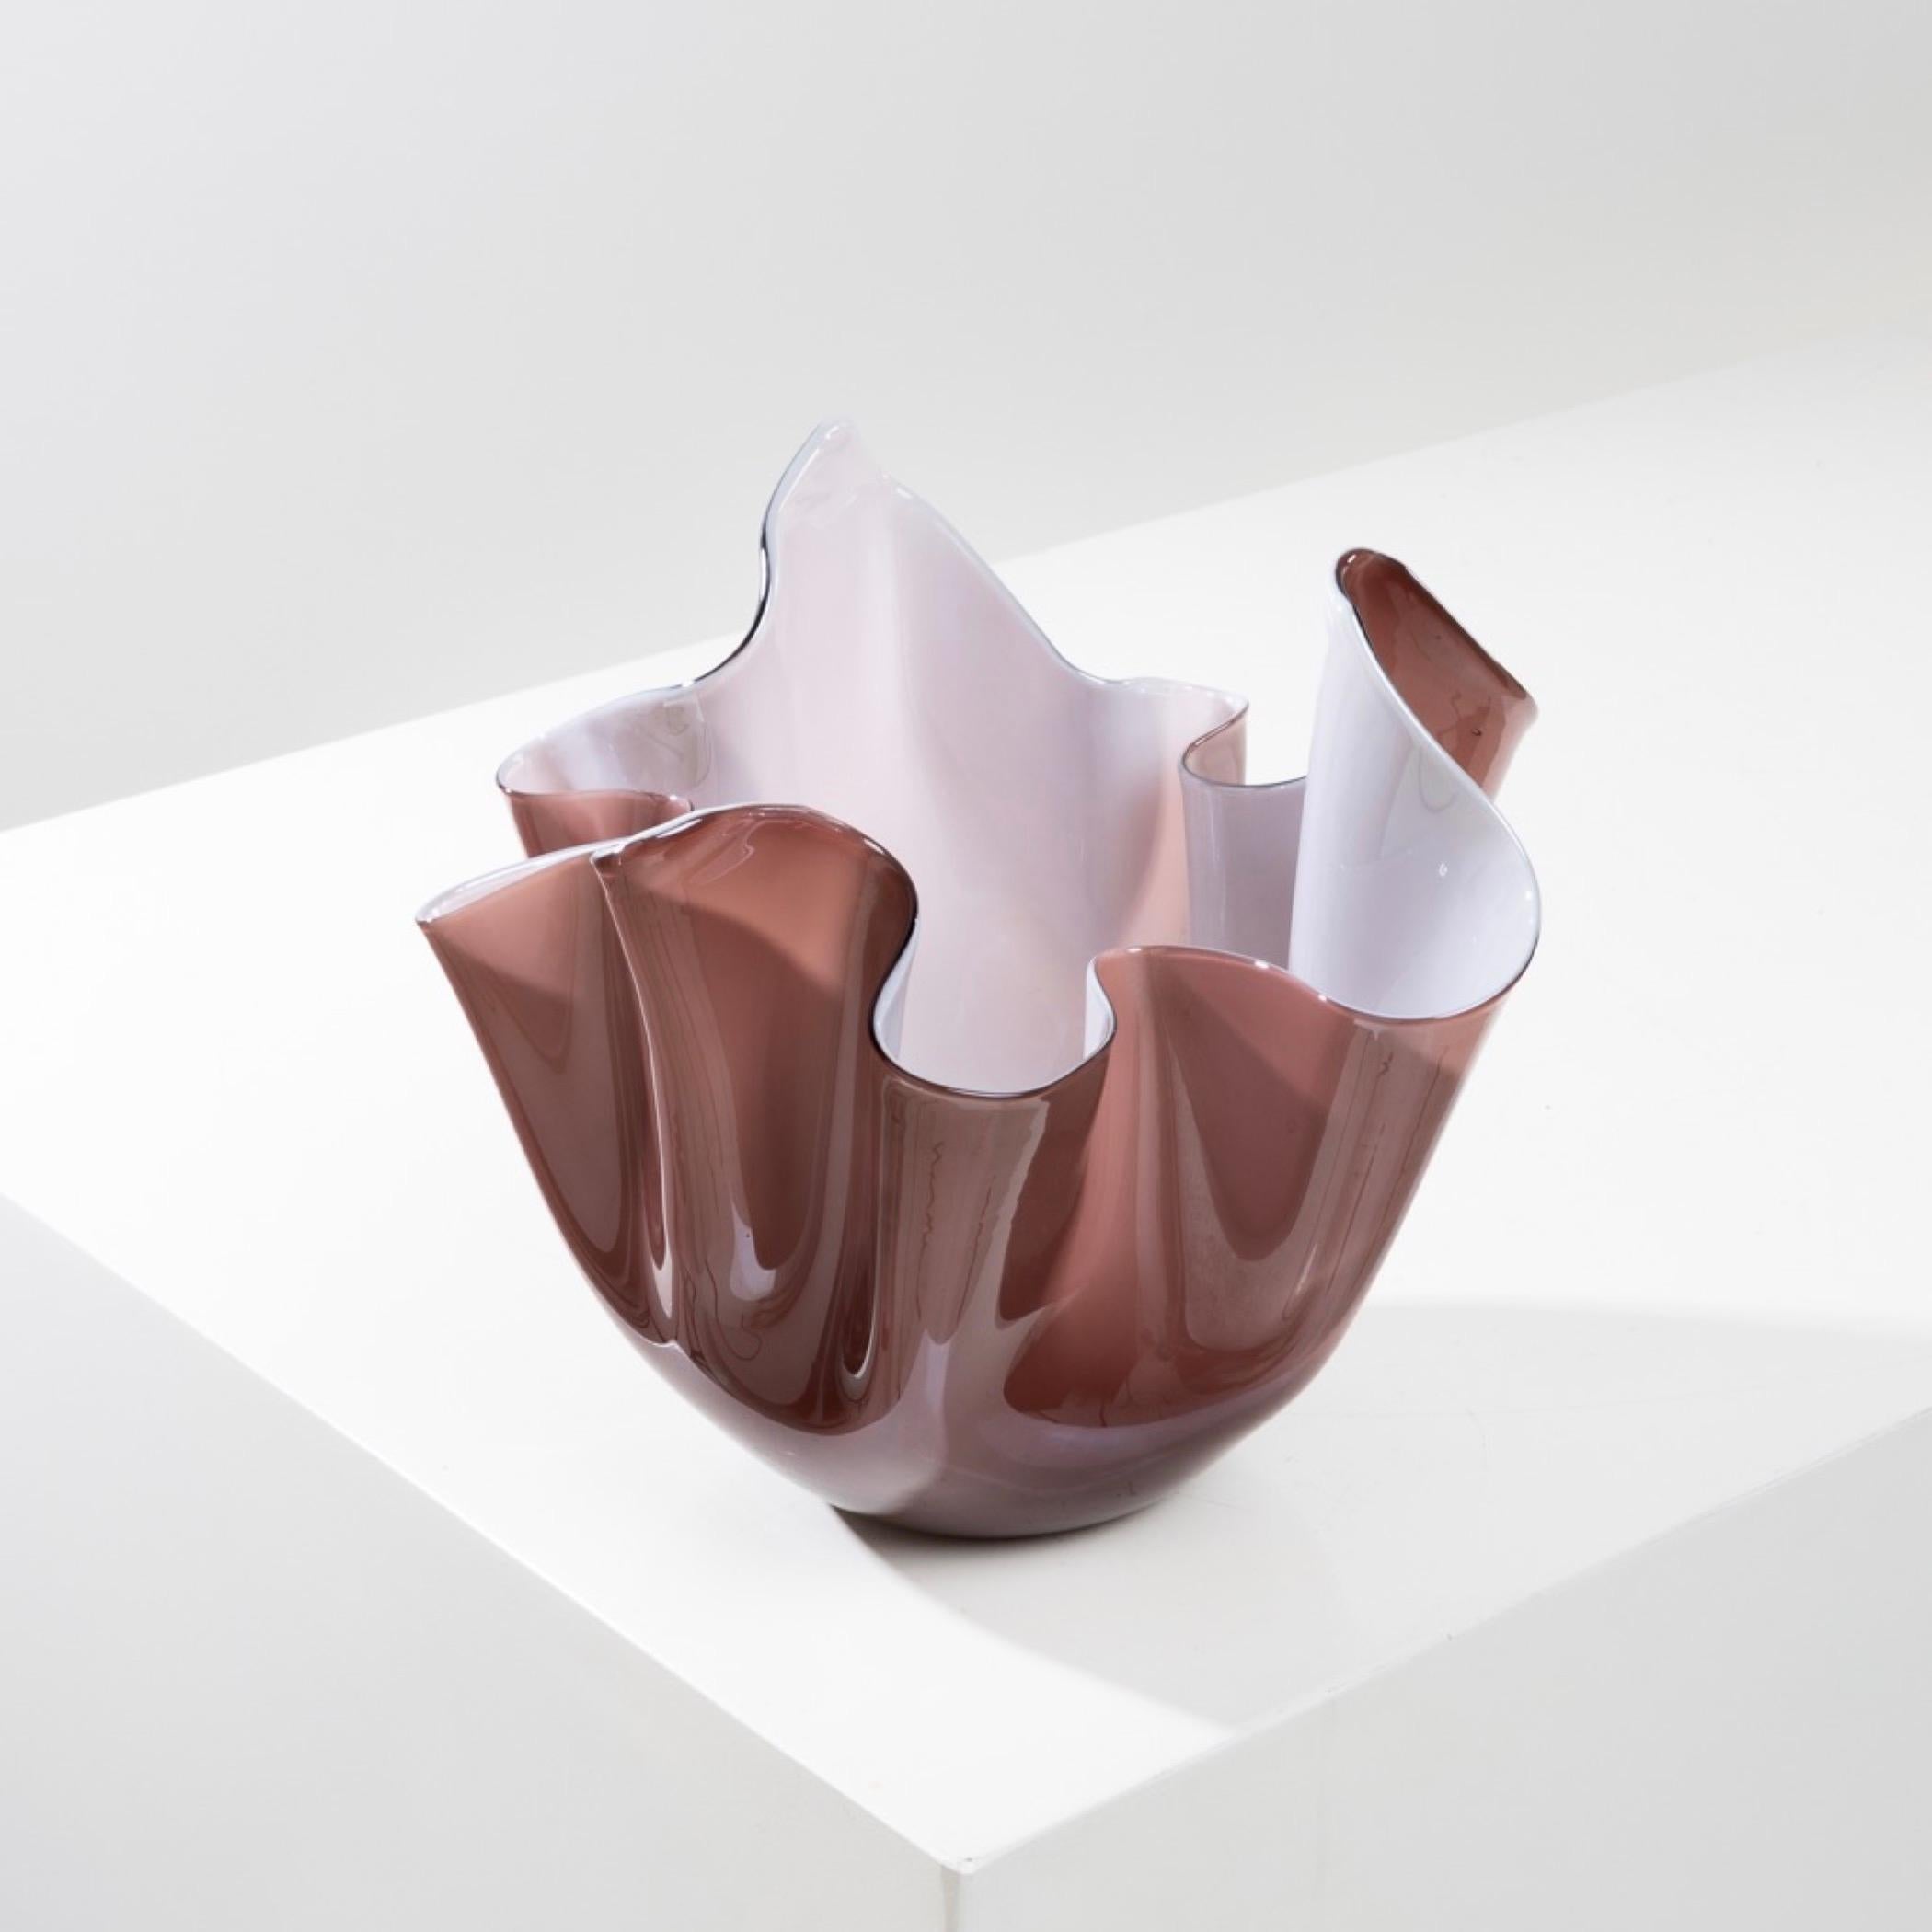 20th Century Fazzoletto by Fulvio Bianconi – Handkerchief vase – Venini Murano For Sale